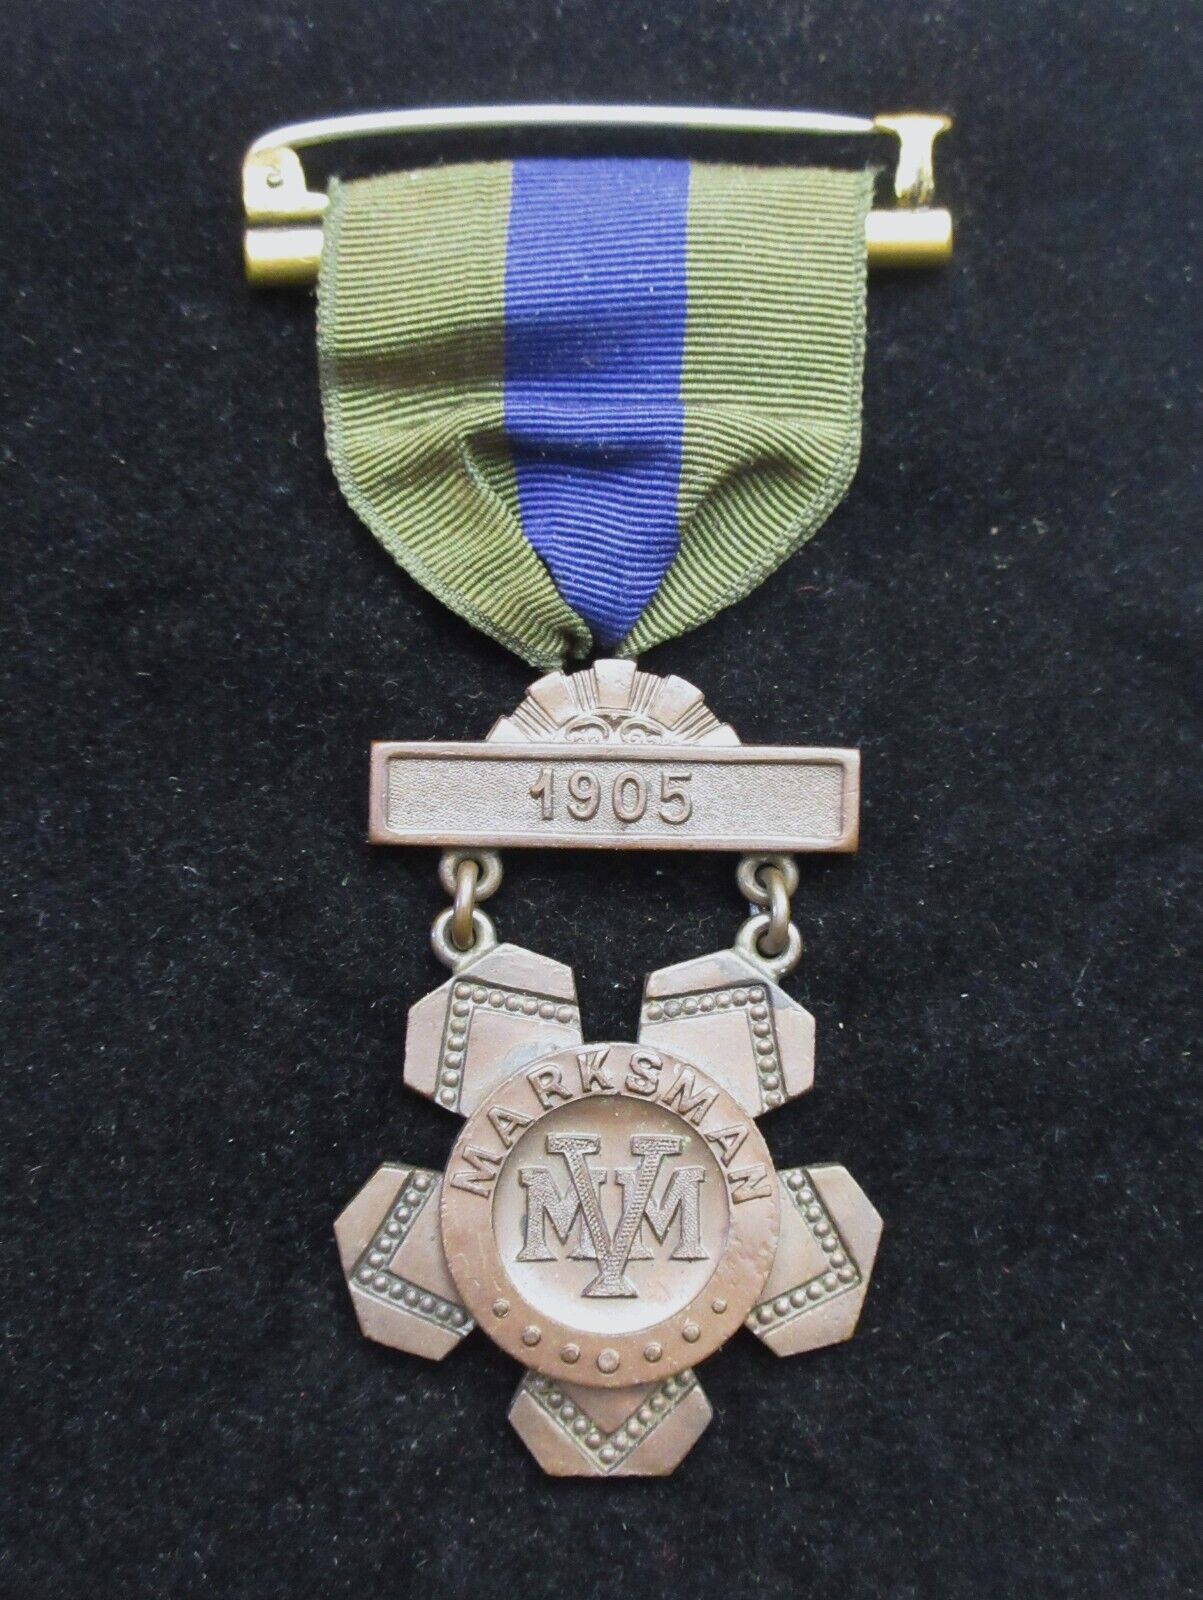 Mass. Vol. Militia 1905 2nd Class Marksman Badge W Ribbon